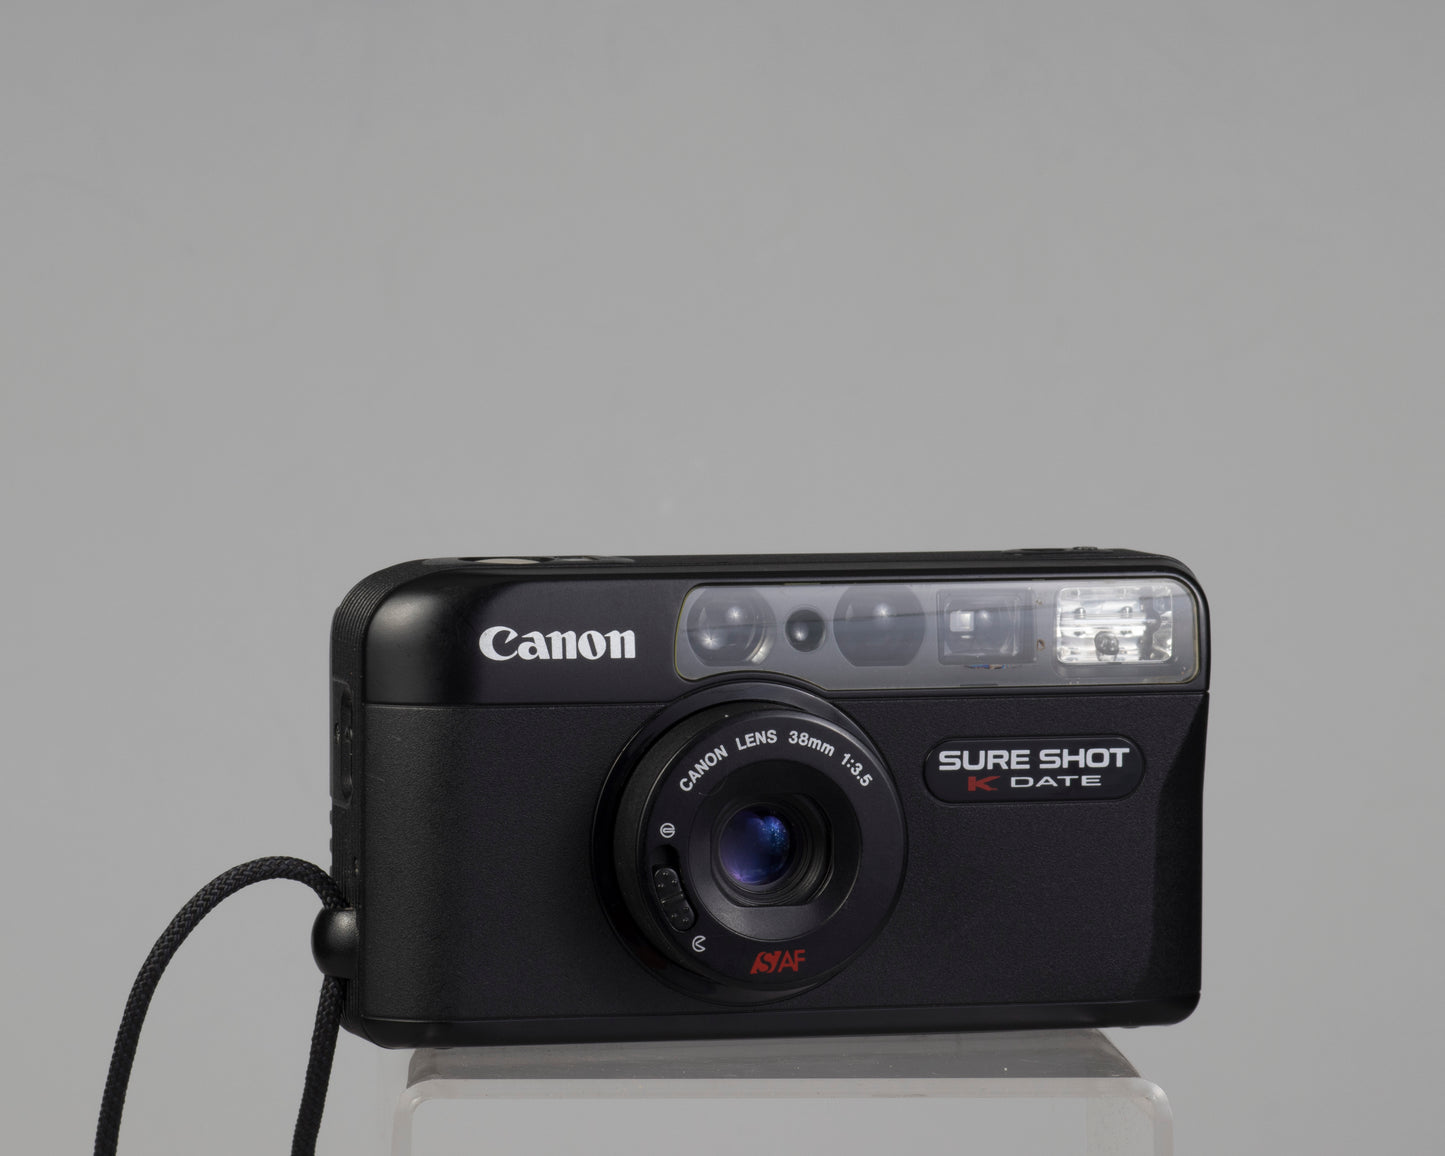 Canon Sure Shot K-Date (aka Sure Shot Max Date) 35mm film camera w/case (serial 36033329)